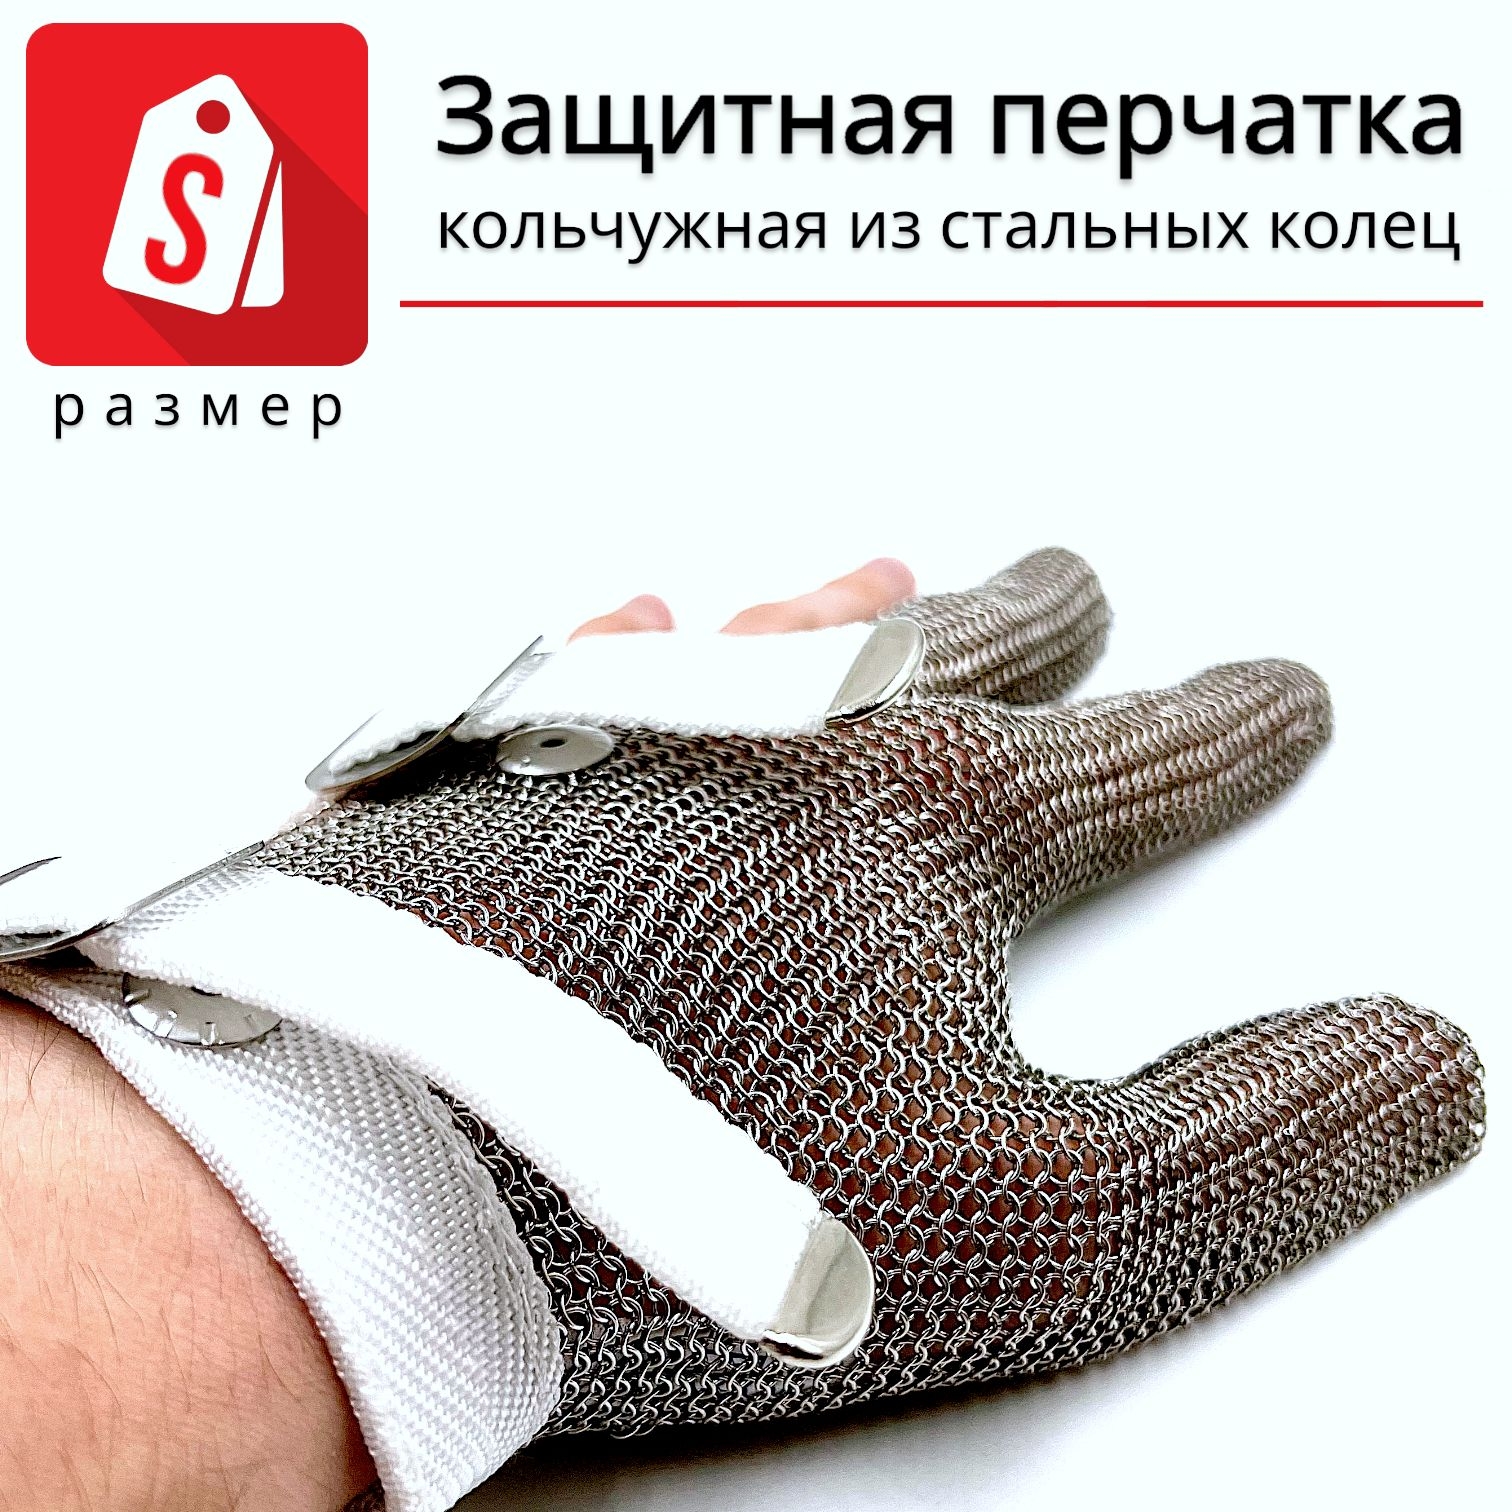 Трехпалая кольчужная перчатка (размер S)